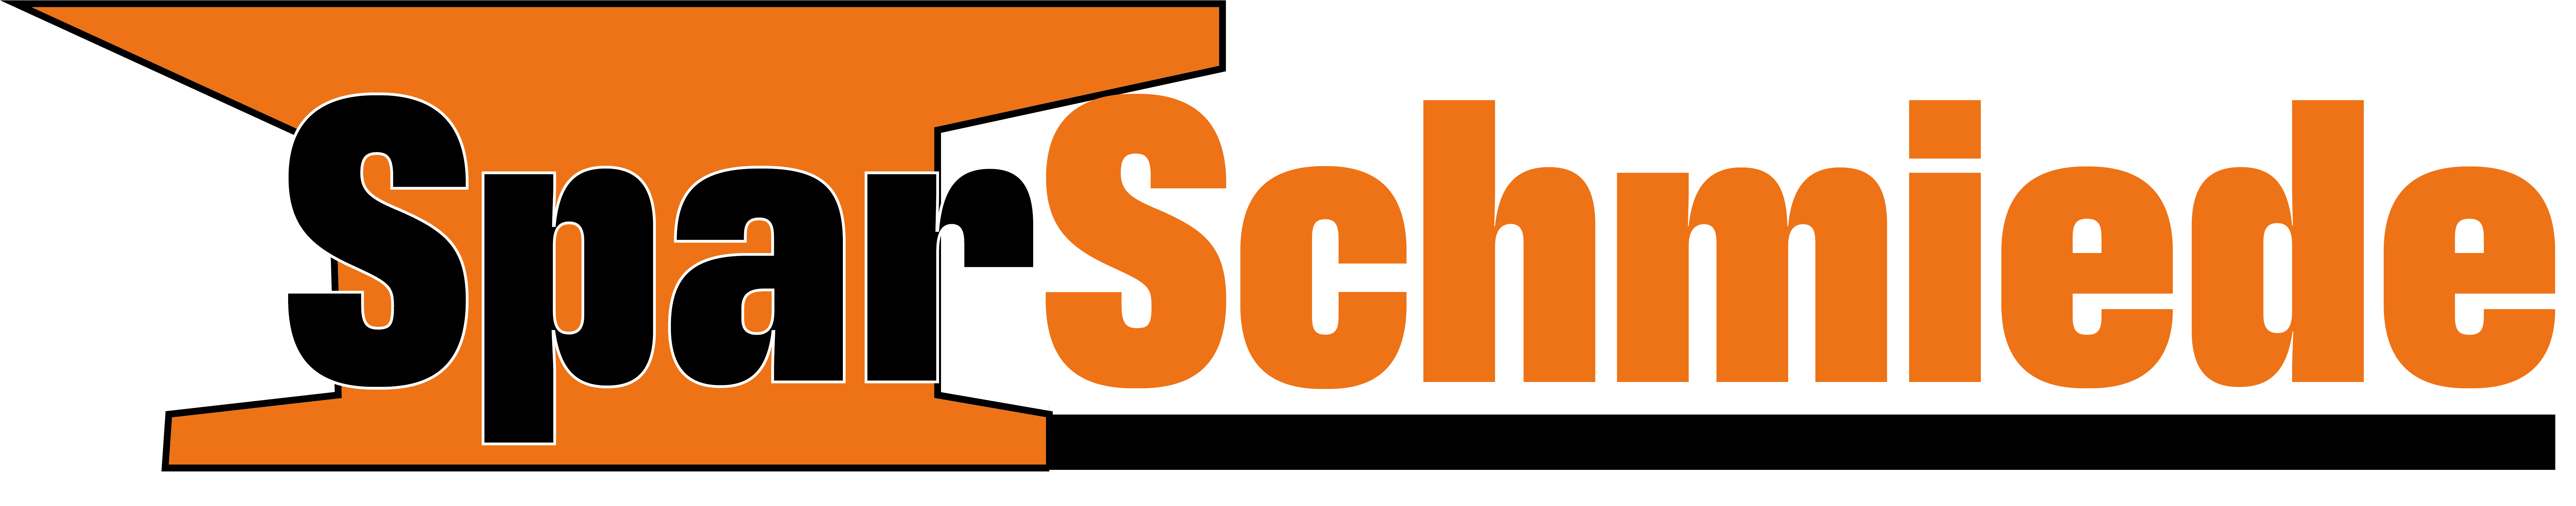 Sparschmiede Logo